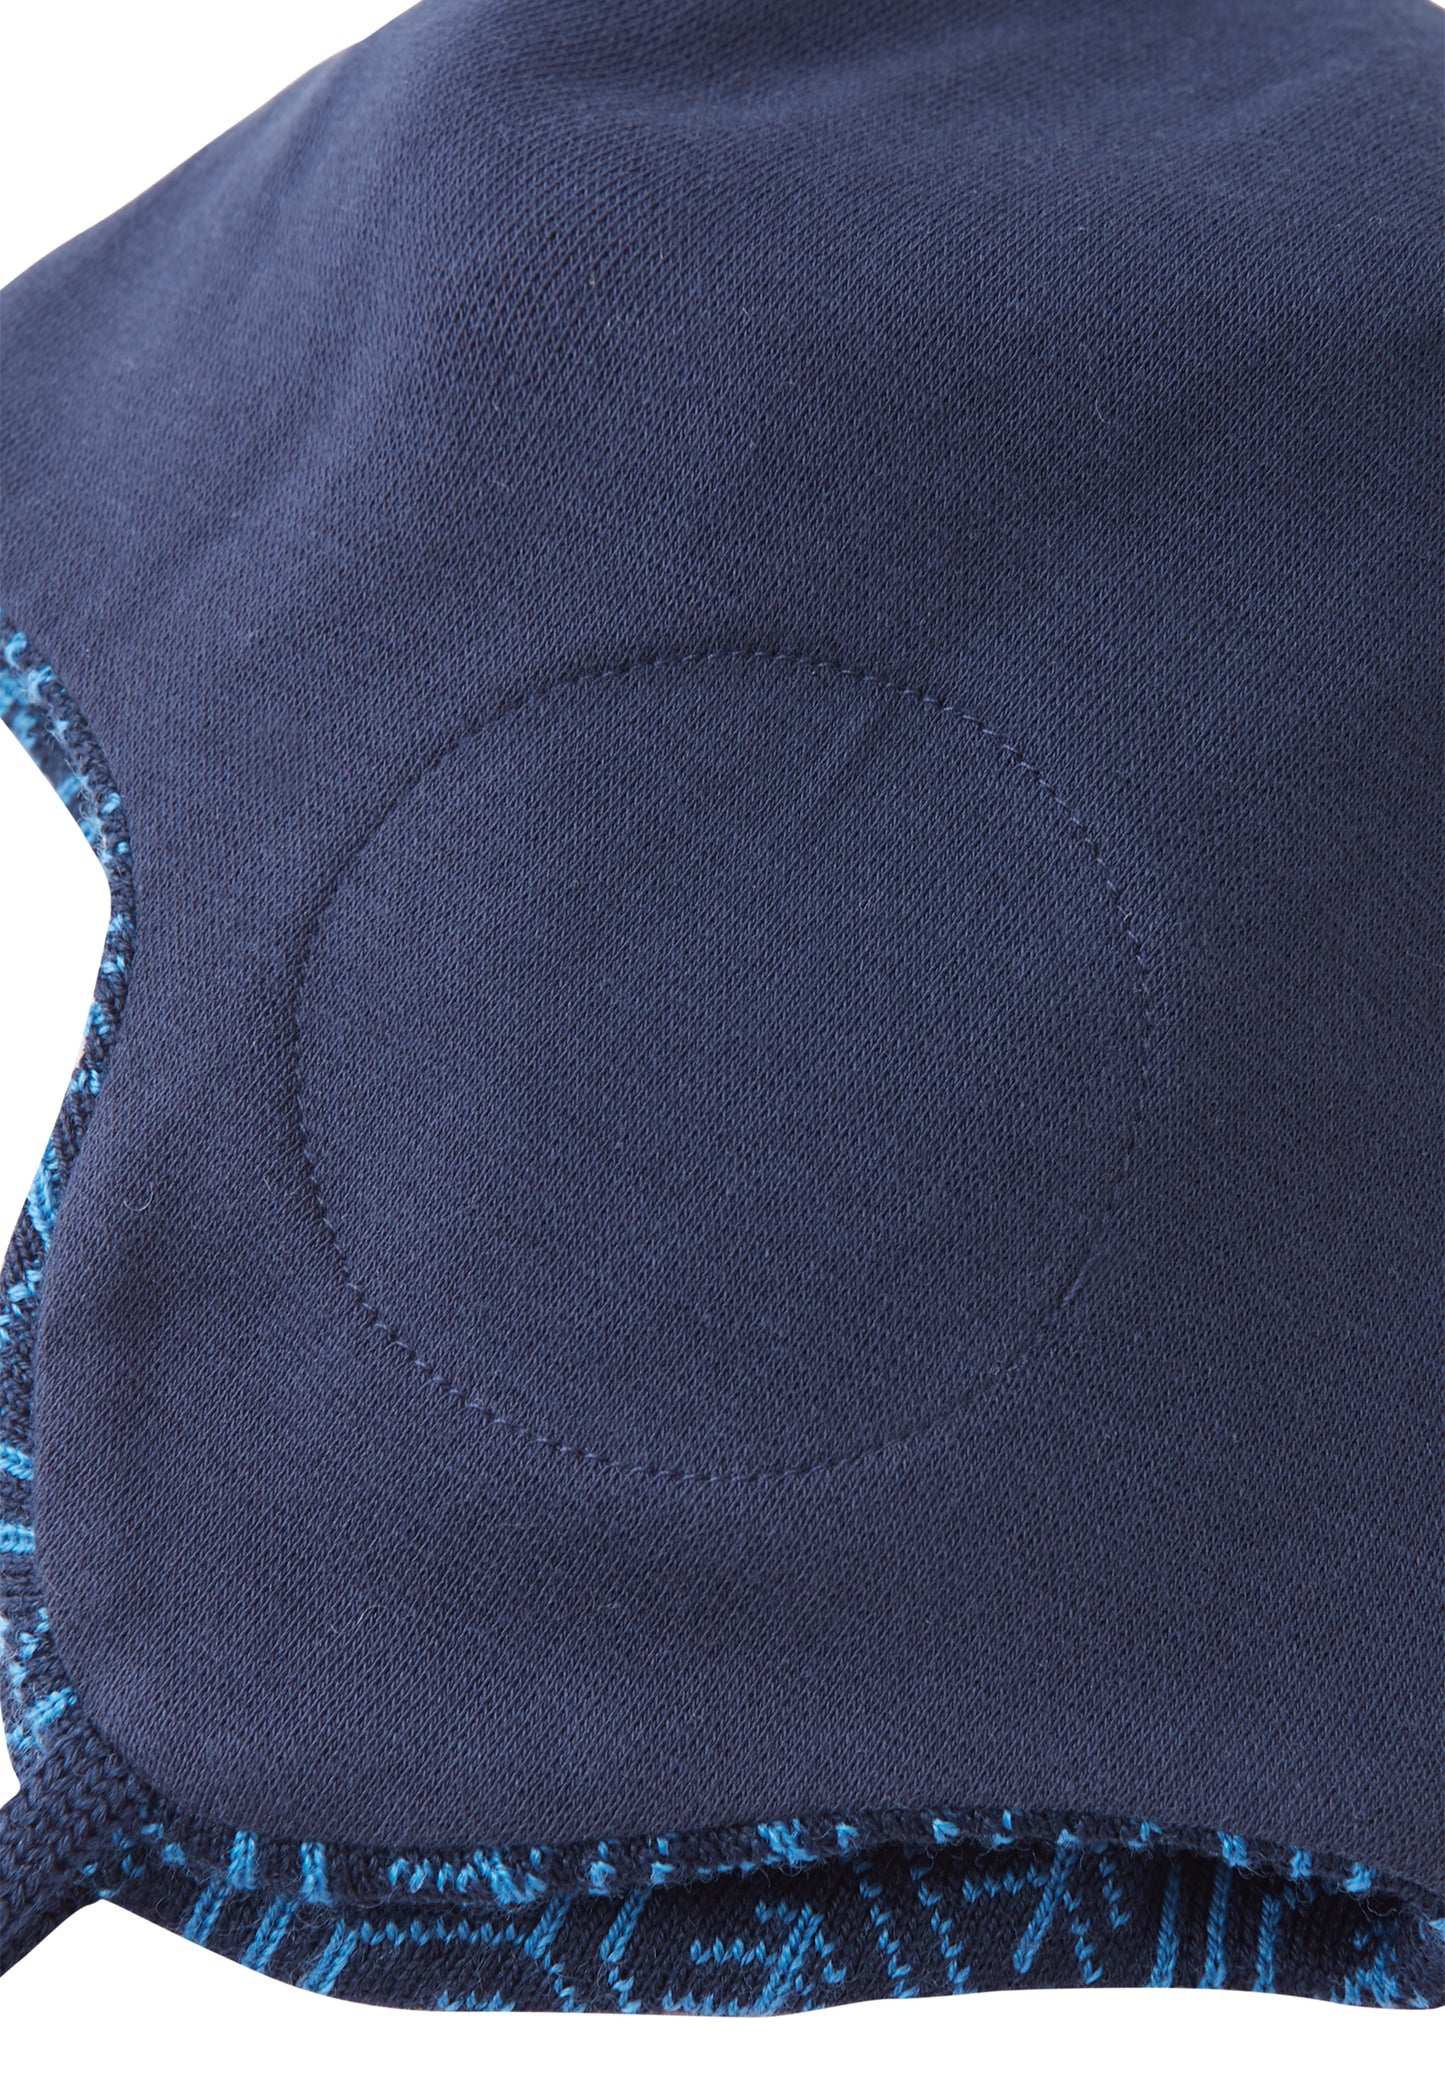 Reima Mütze mit Bändel <br>Kuurainen <br>Gr. 46, 48, 50, 52 <br>innen hautfreundliche Bio-Baumwolle<br> aussen warme, wasserabweisende Merino-Wolle<br> Windstopper-Membrane im Ohrbereich